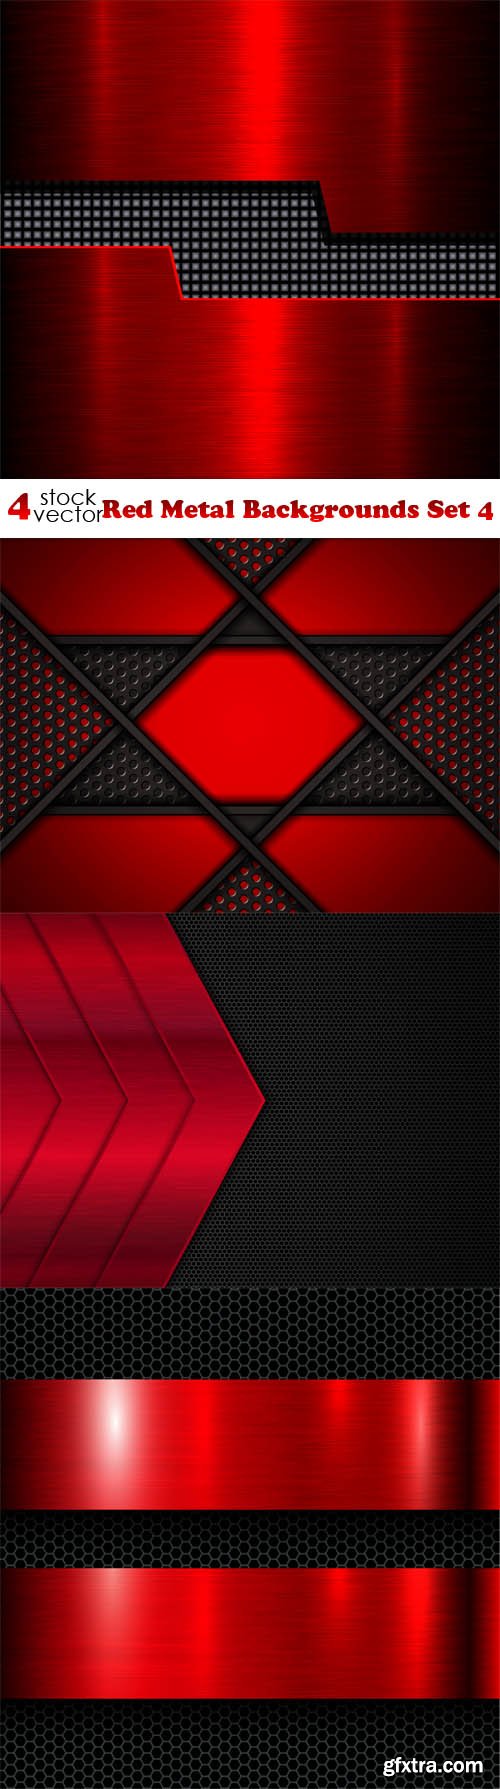 Vectors - Red Metal Backgrounds Set 4